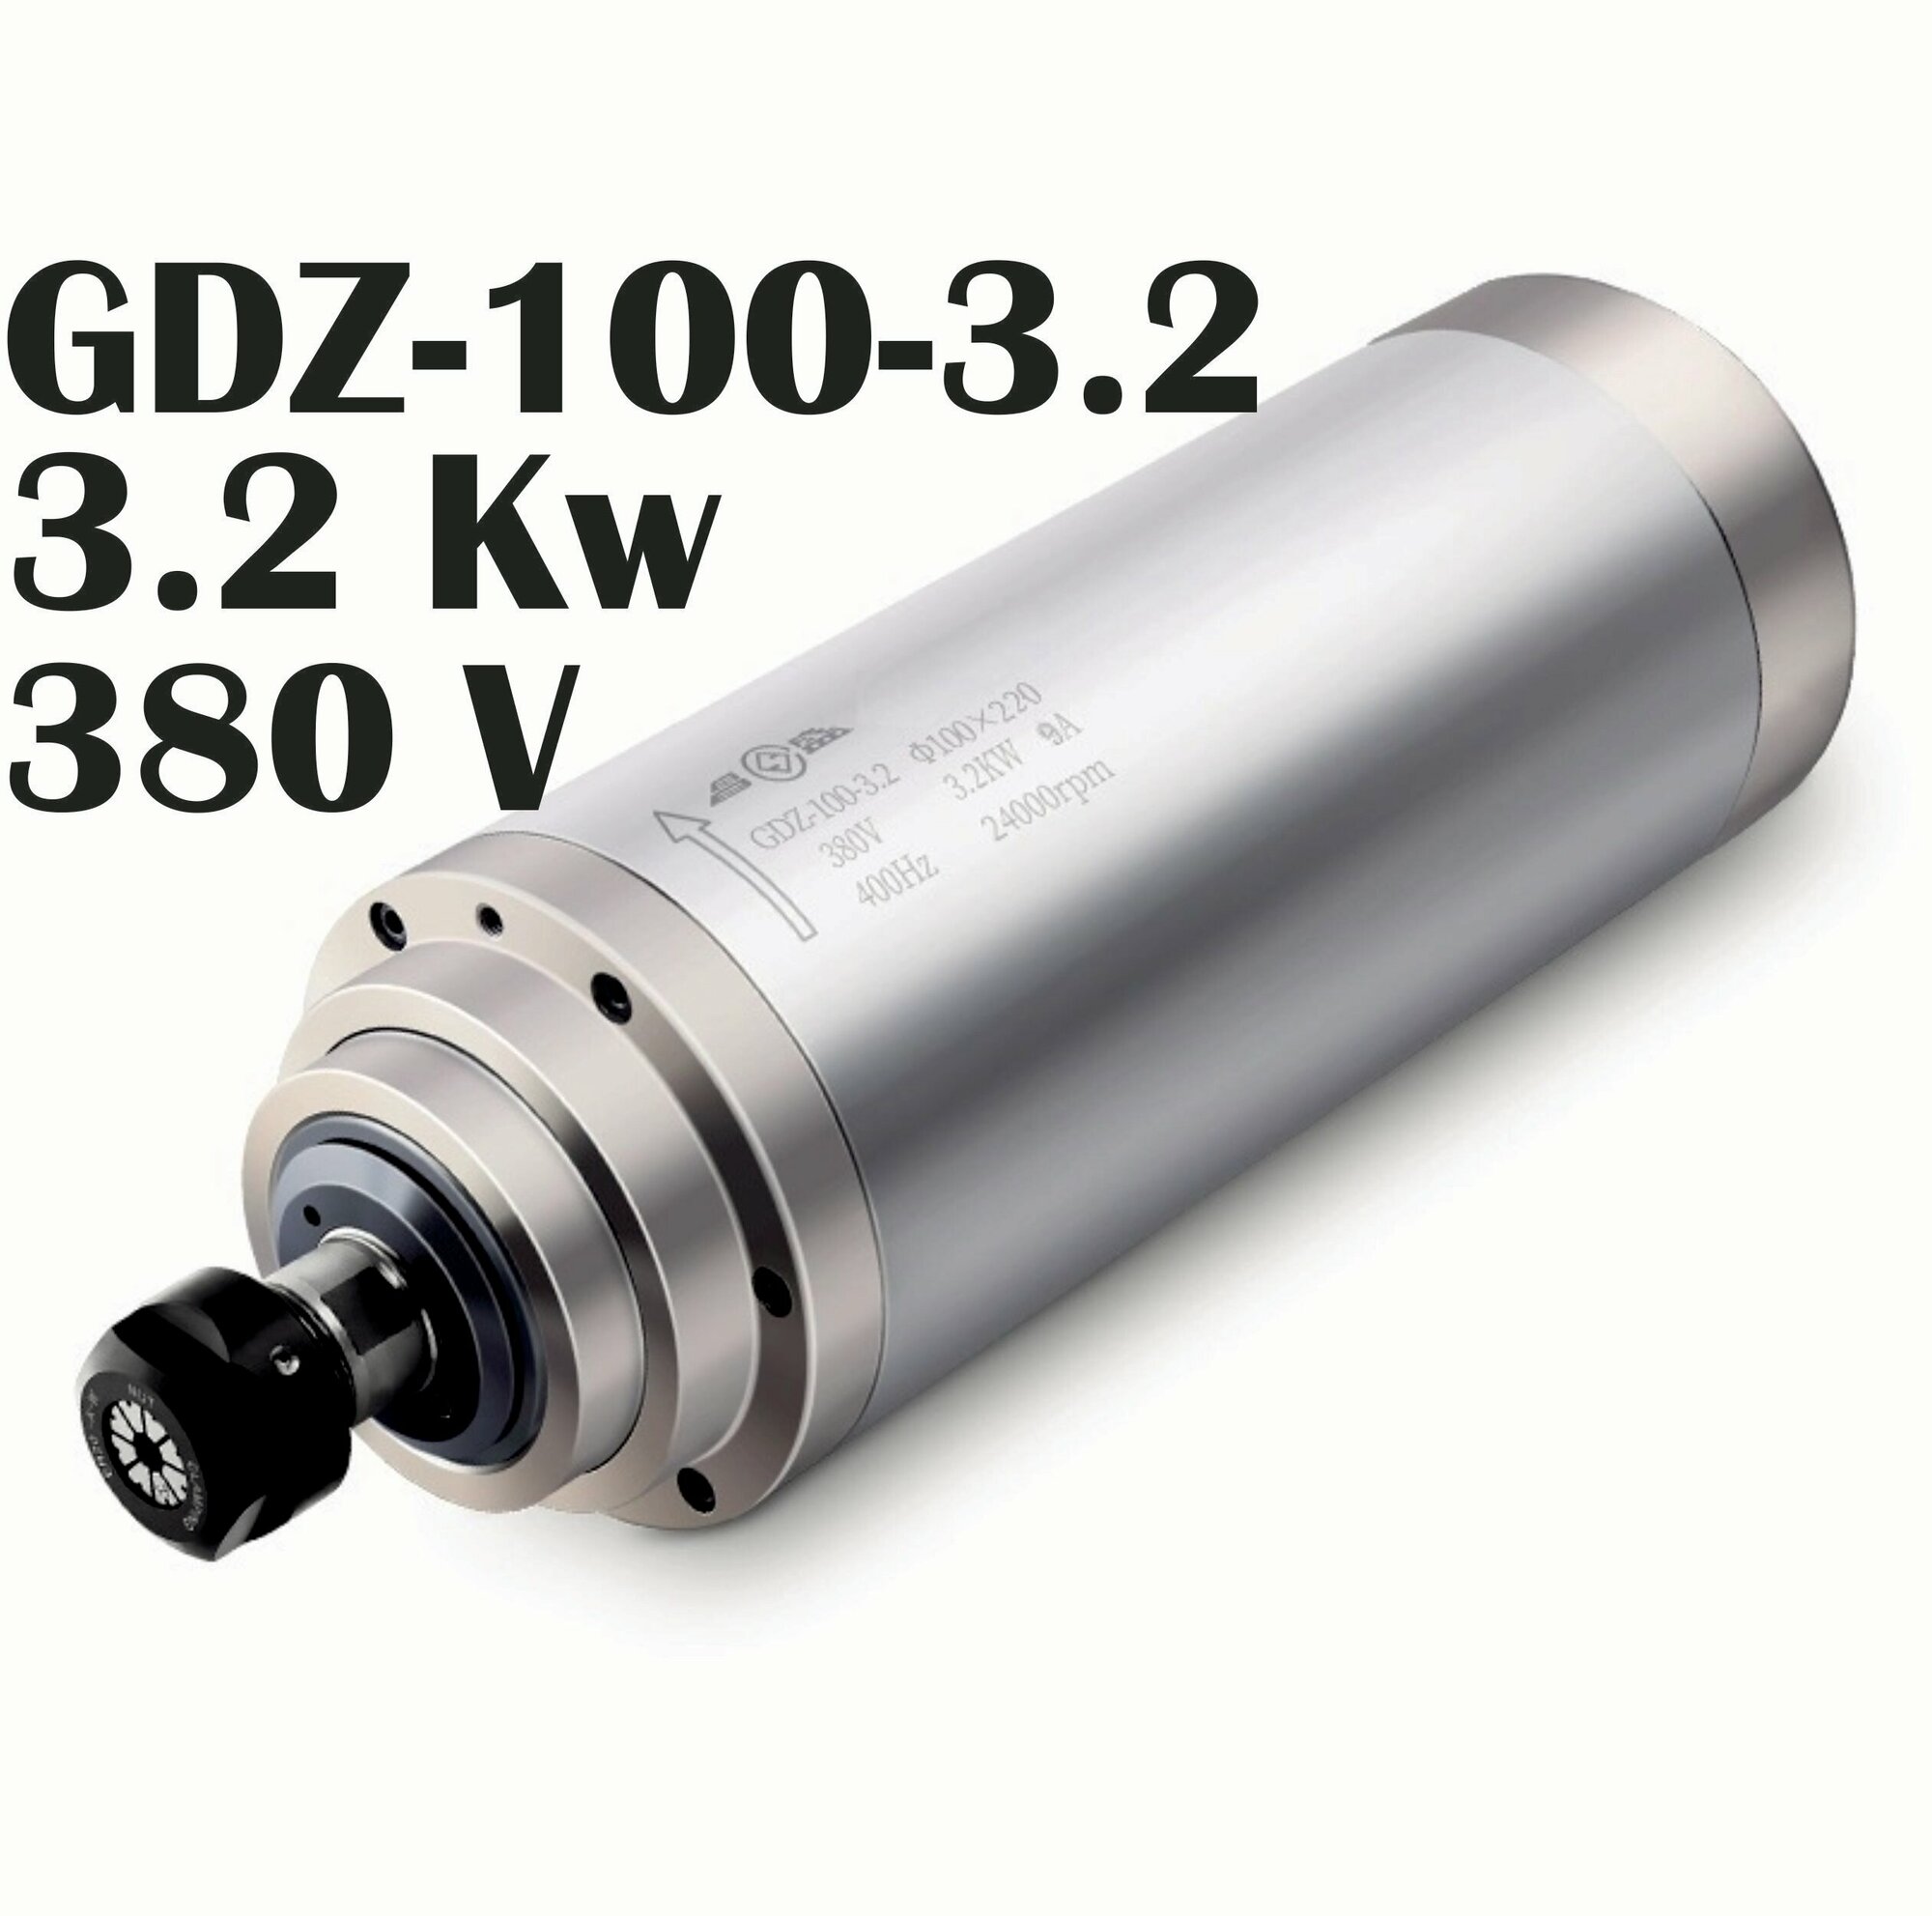 Шпиндель для станка с ЧПУ GDZ100-3.2 (3.2 кВт, 380V, ER20) водяного охлаждения